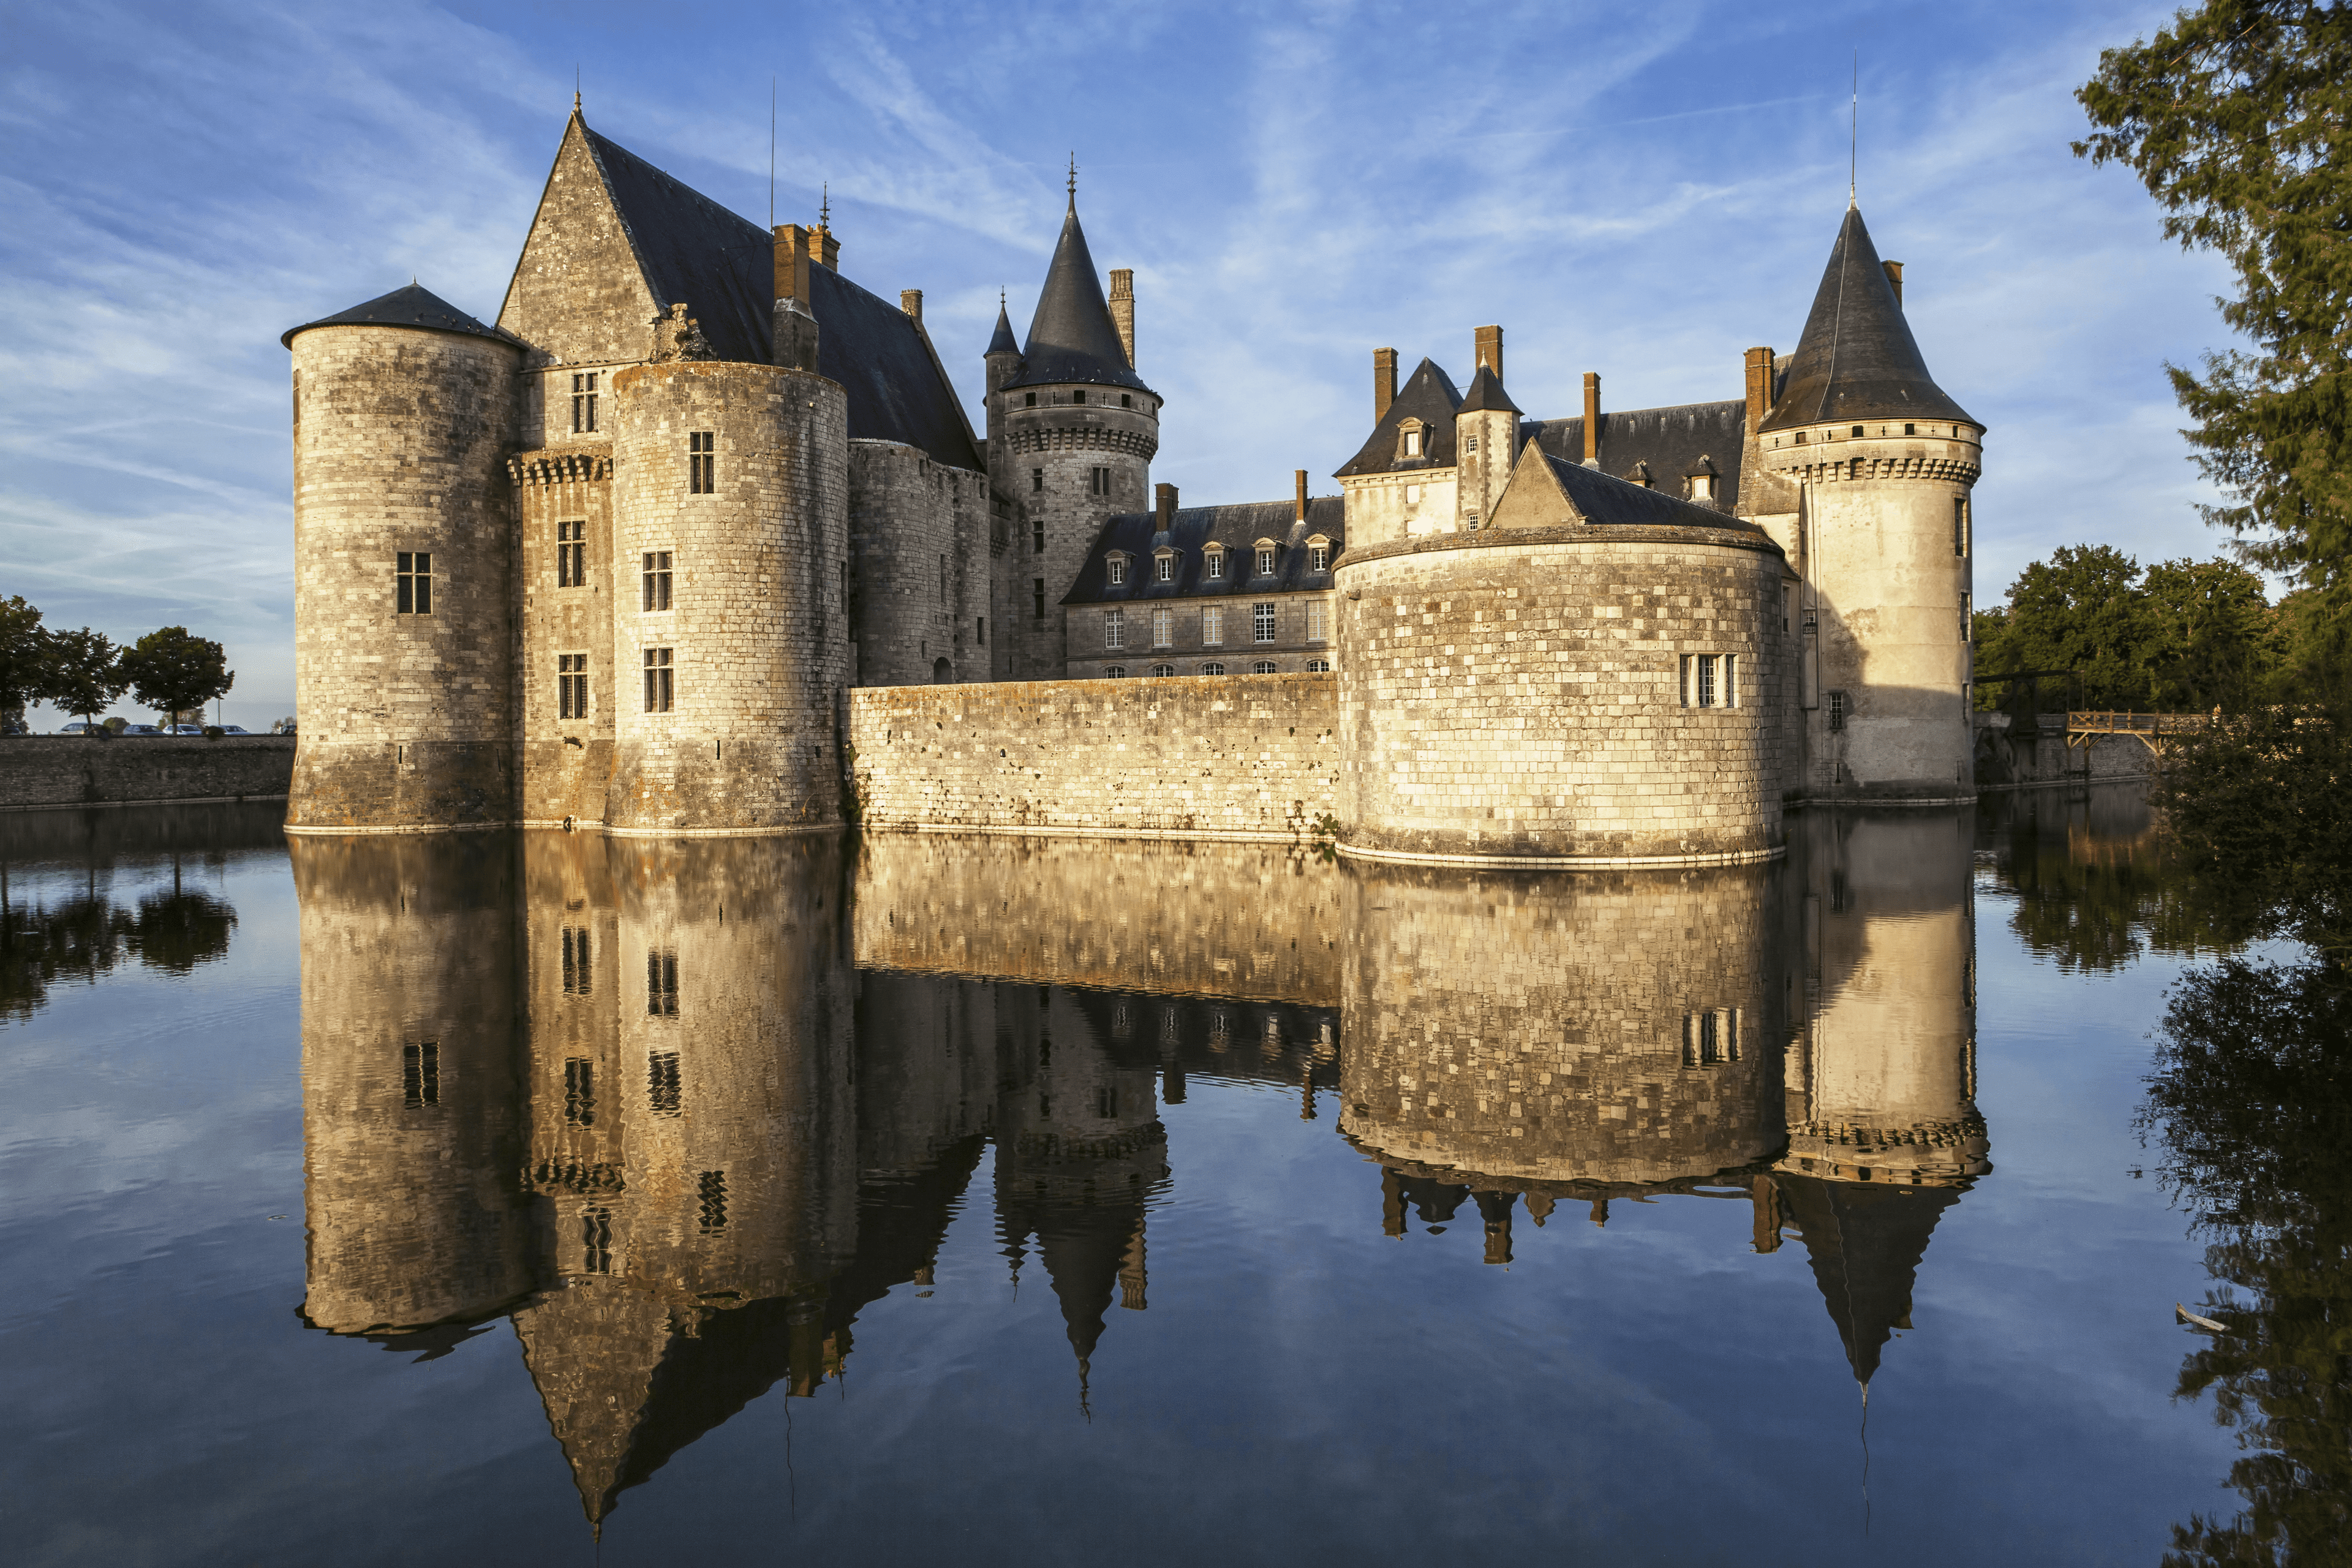  Château de Chambord